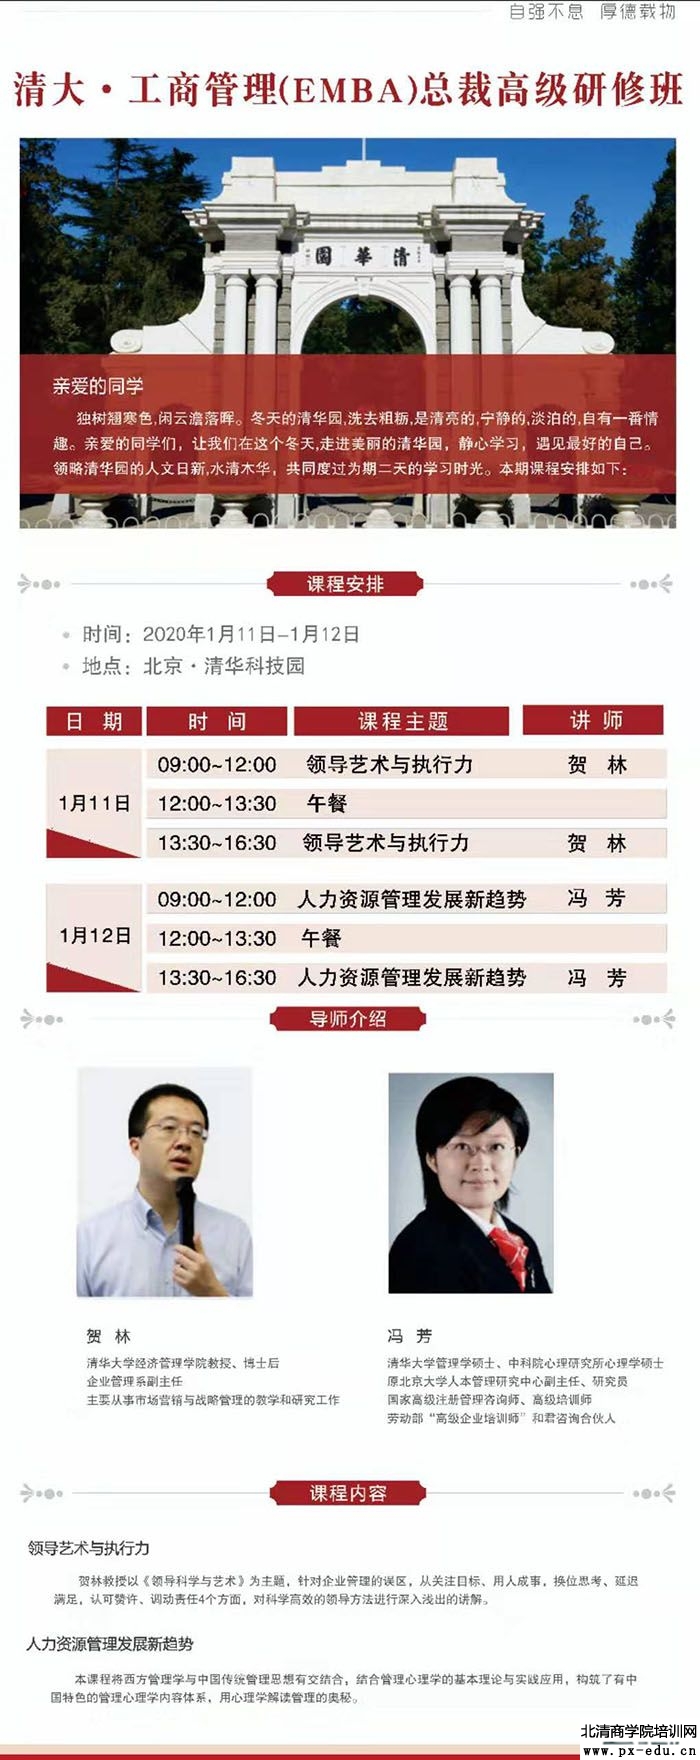 1月11-12日清大工商管理EMBA总裁高级研修班上课通知